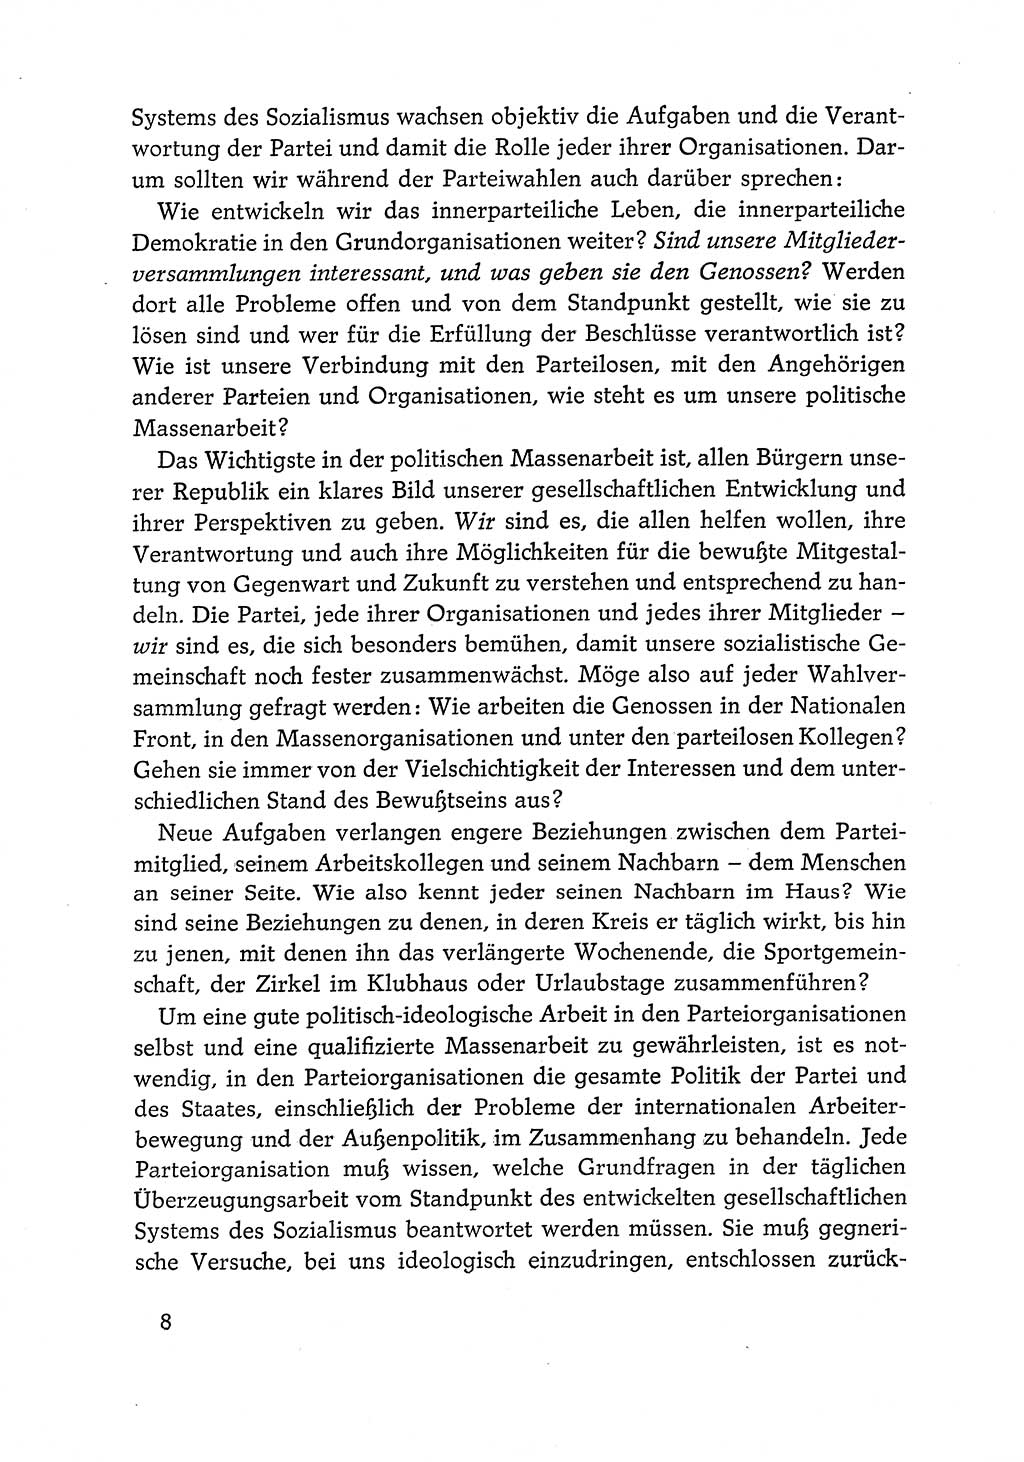 Dokumente der Sozialistischen Einheitspartei Deutschlands (SED) [Deutsche Demokratische Republik (DDR)] 1968-1969, Seite 8 (Dok. SED DDR 1968-1969, S. 8)